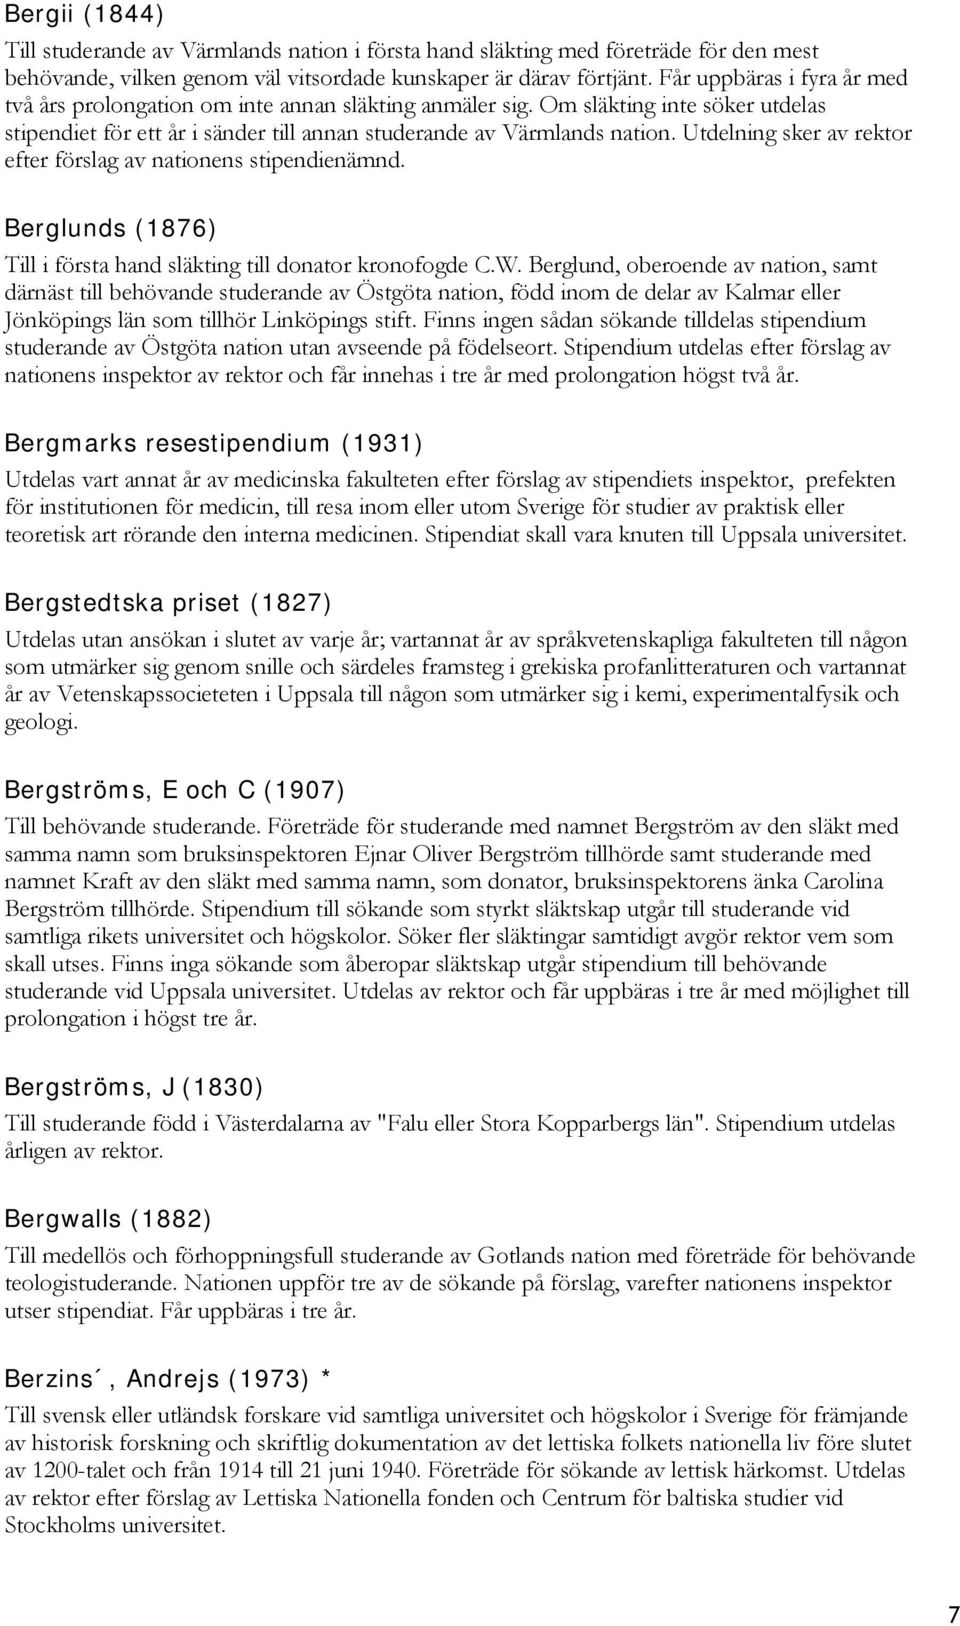 Stipendie handbok. Samtliga stipendier och anslag - PDF Gratis ...